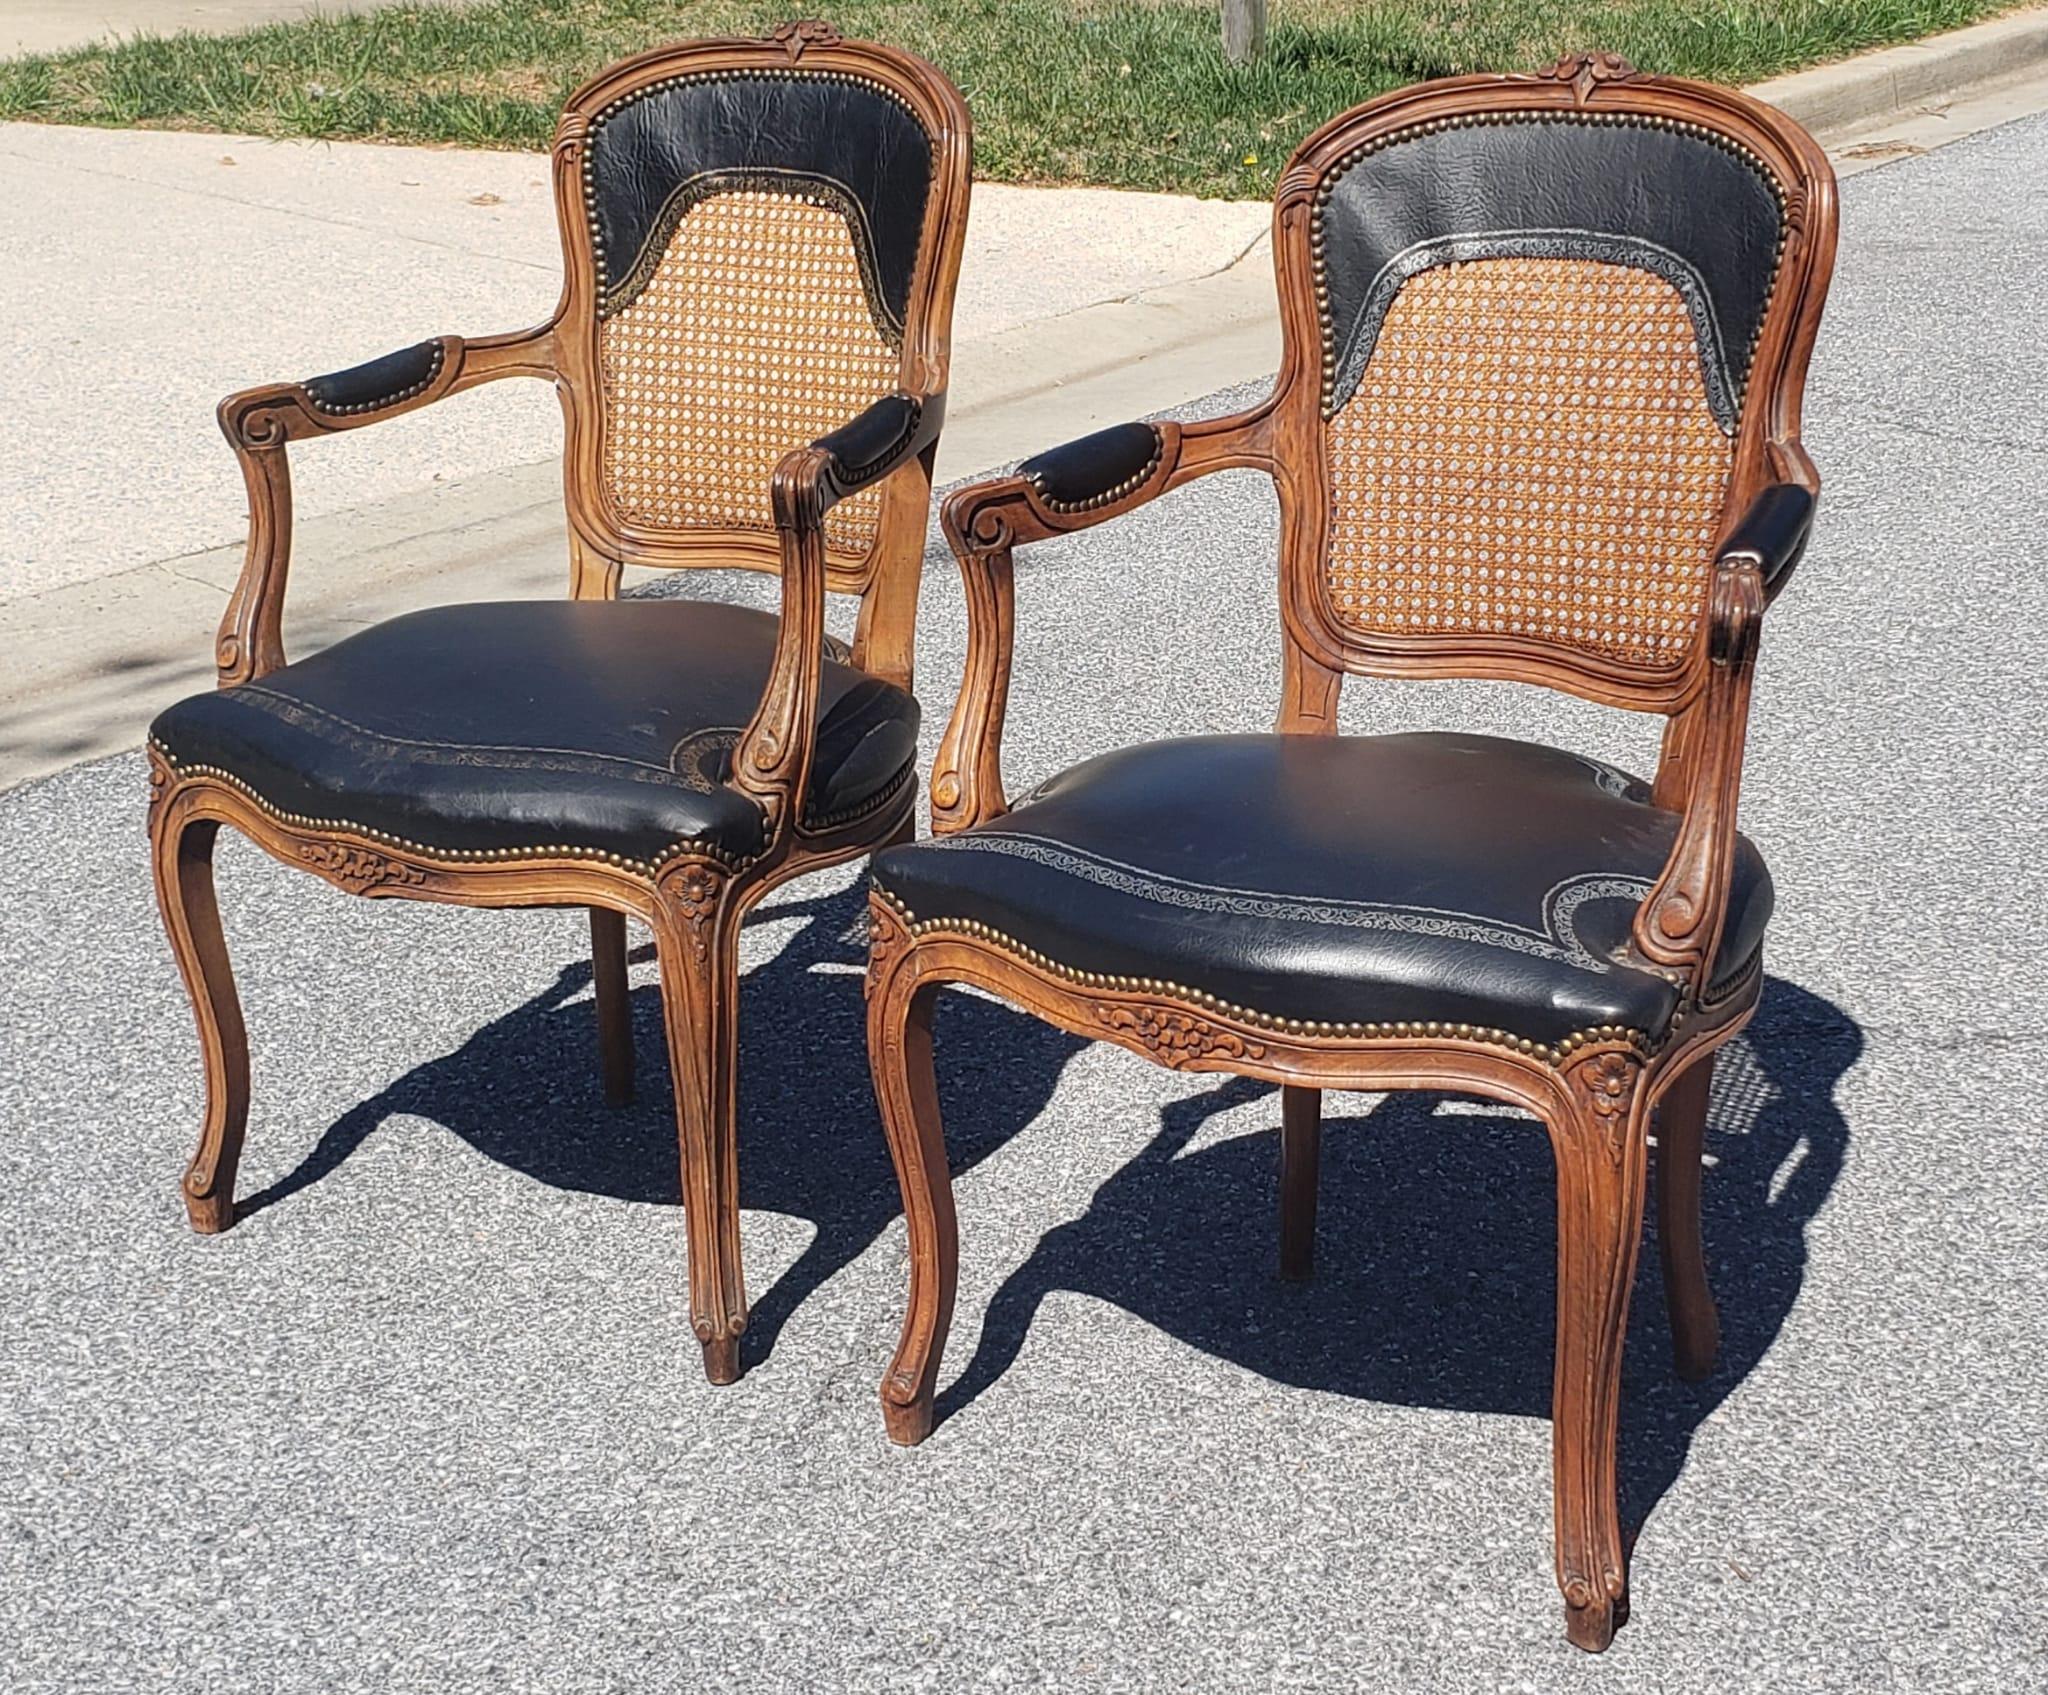 Paire de fauteuils de style Louis XV en bois de fruitier, clous en laiton et cuir, à dossier canné. Très bon état vintage. Quelques décolorations sur les garnitures dorées et argentées de l'étampe. 
Mesure 24